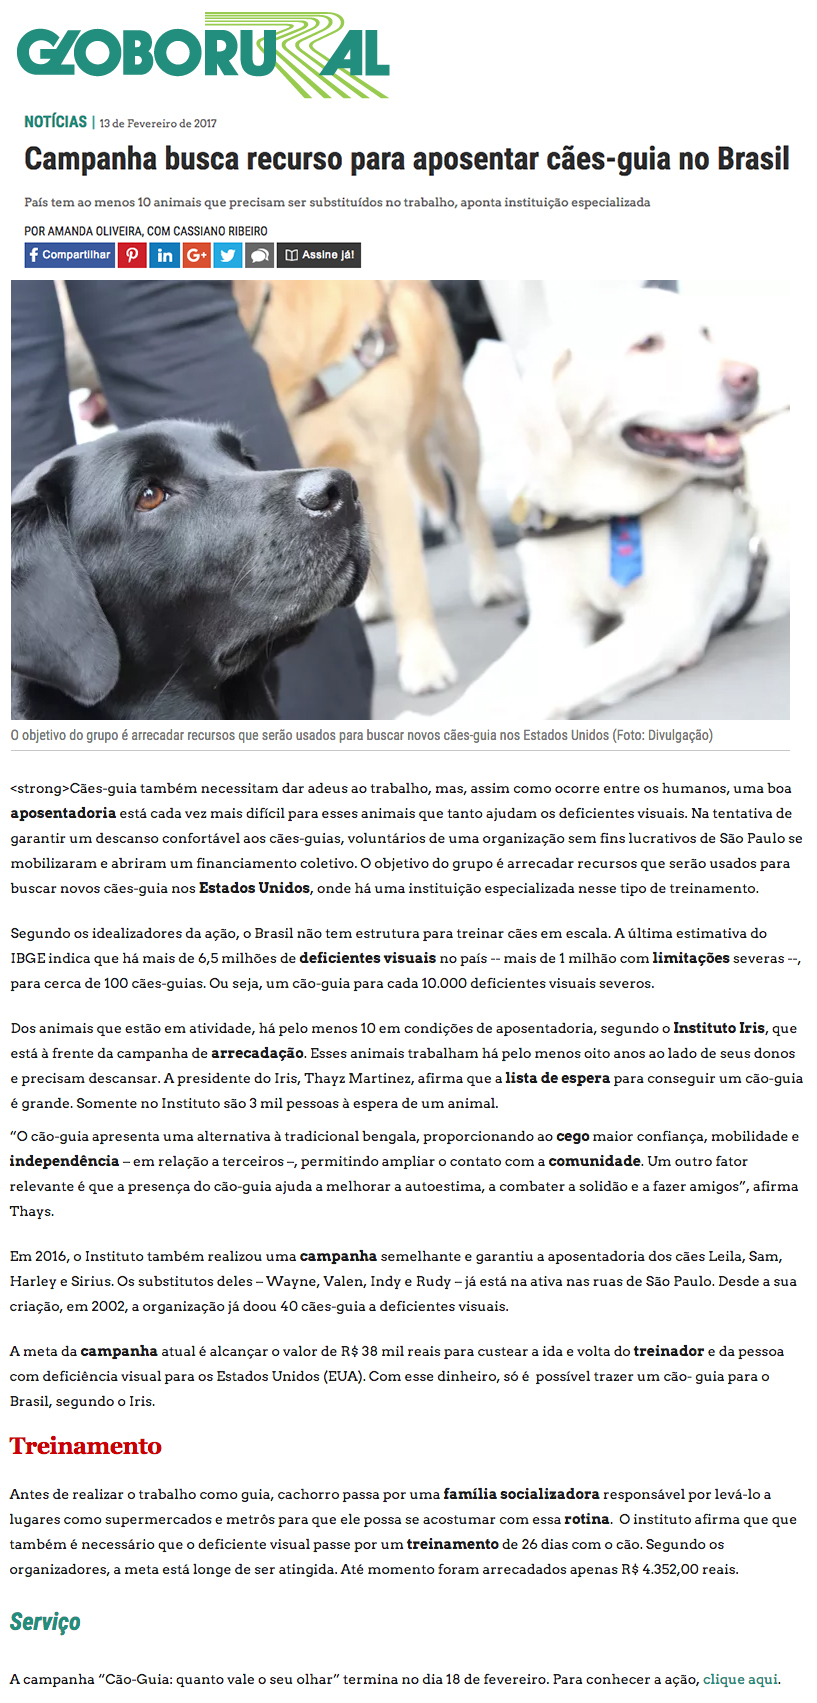 Imagem 2017 - Campanha busca recurso para aposentar cães-guia no Brasil